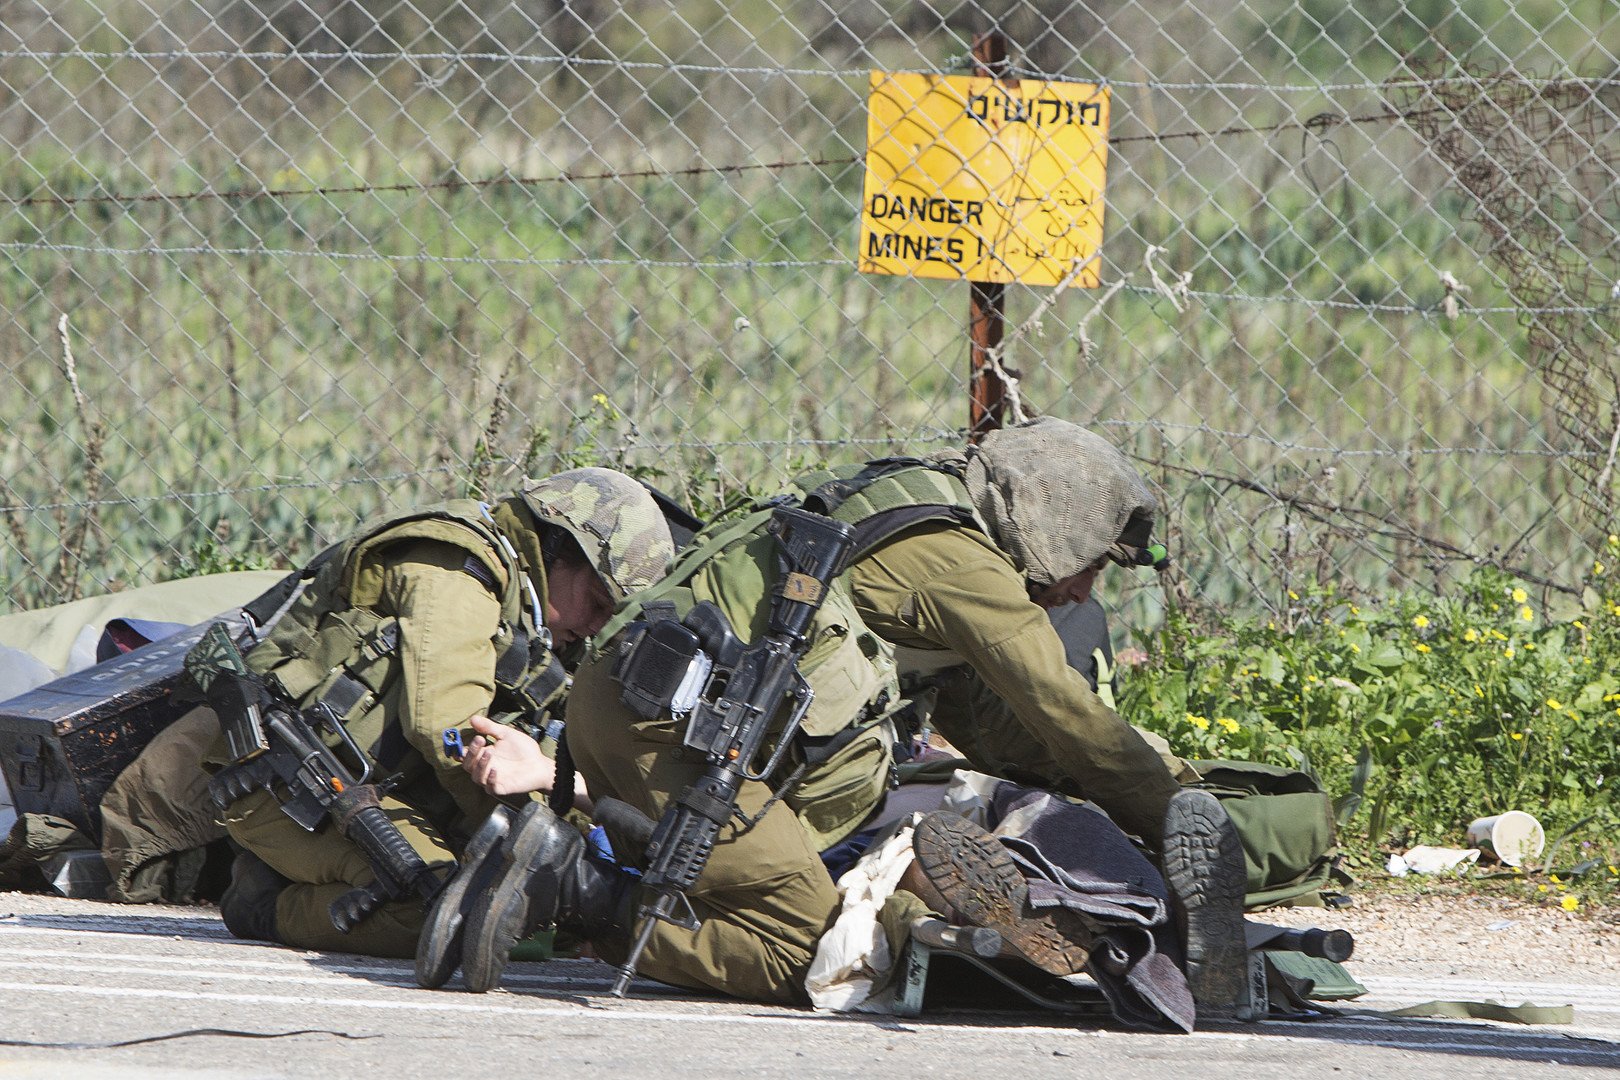  جنود اسرائيليون يحاولون اسعاف جندي مصاب نتيجة قصف حزب الله على حدود اسرائيل مع لبنان 28 يناير 2015